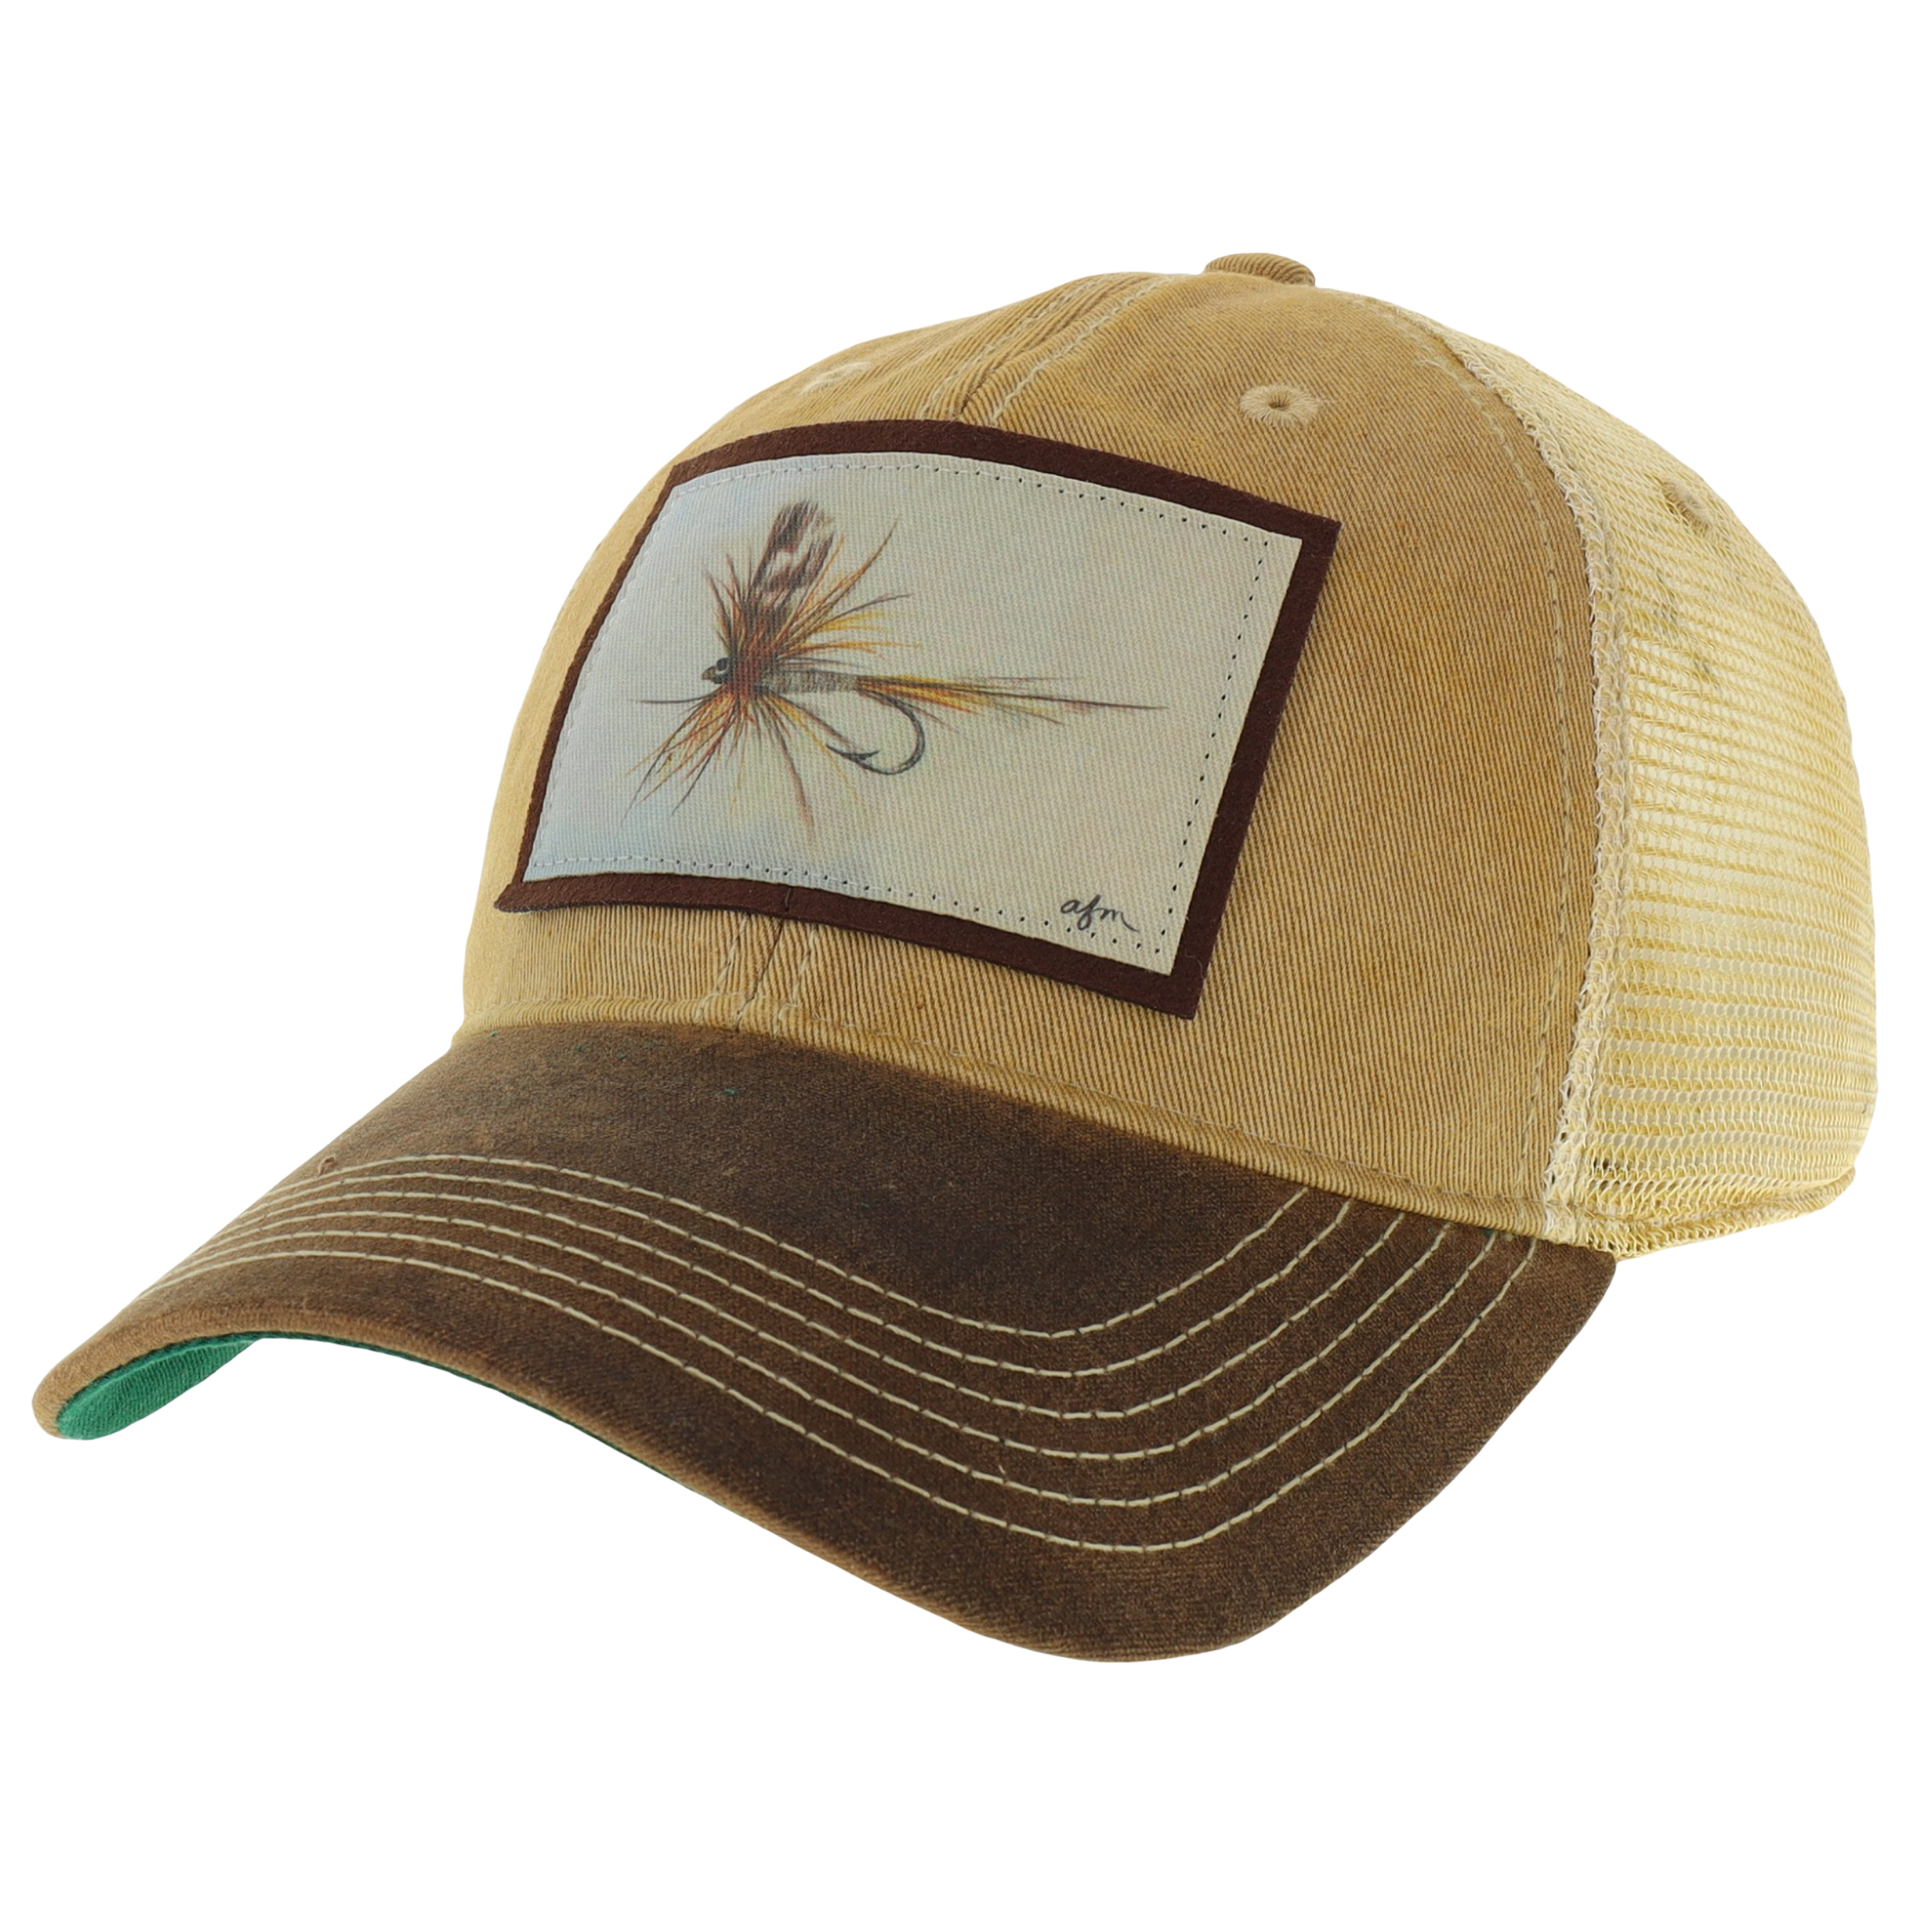 Adams Fly Waxed Cotton Trucker Hat in Khaki/Brown – Aisling